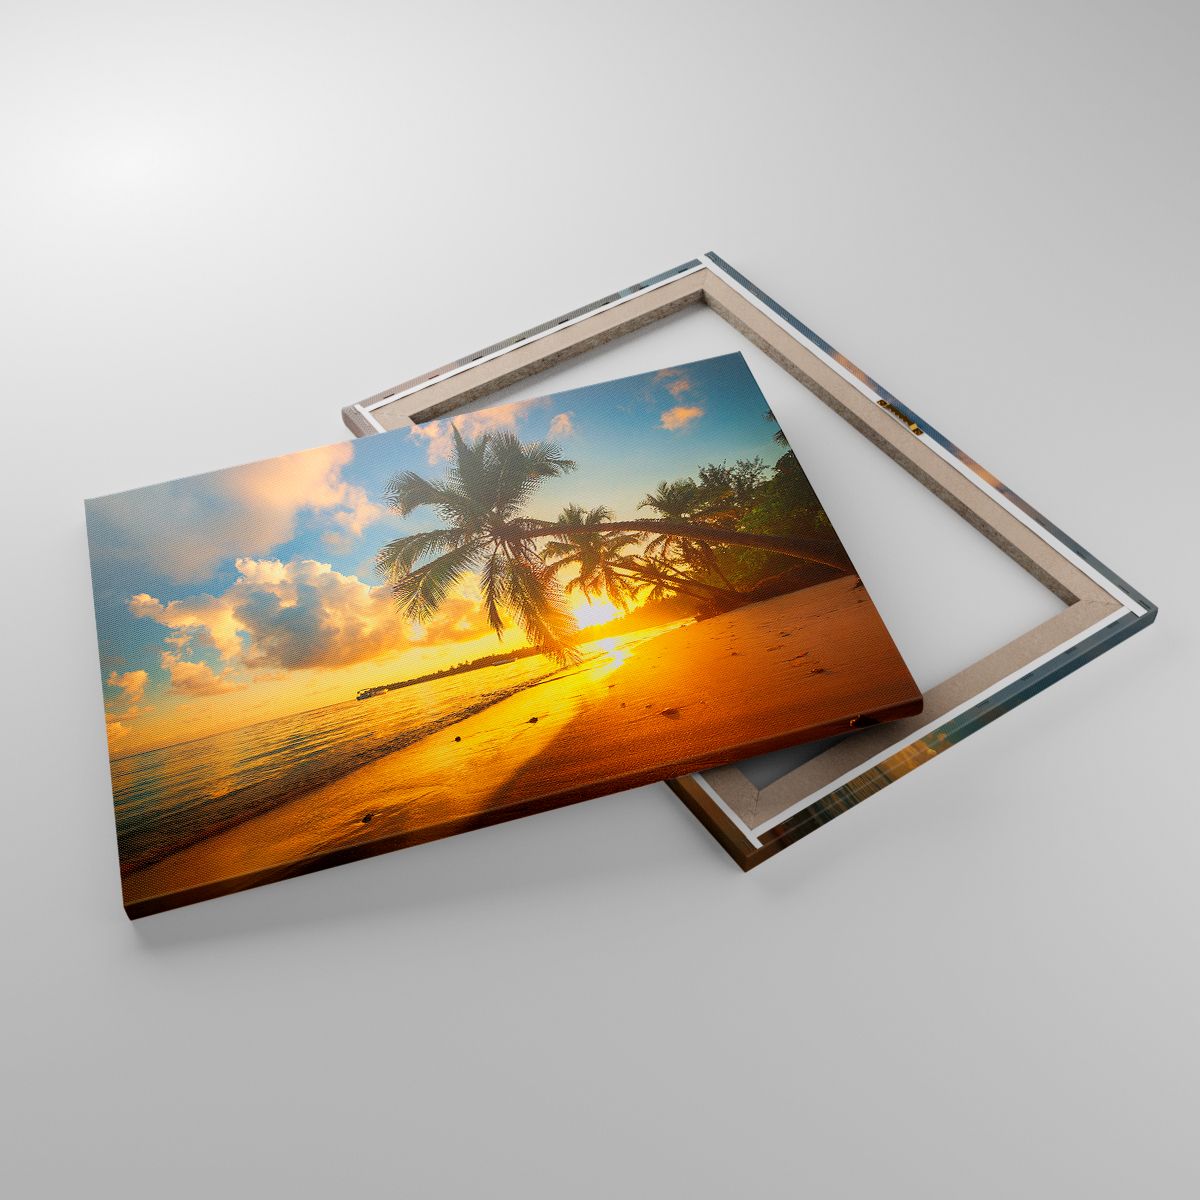 Leinwandbild Landschaft, Leinwandbild Kokusnuss-Palme, Leinwandbild Meer, Leinwandbild Strand, Leinwandbild Der Sonnenuntergang